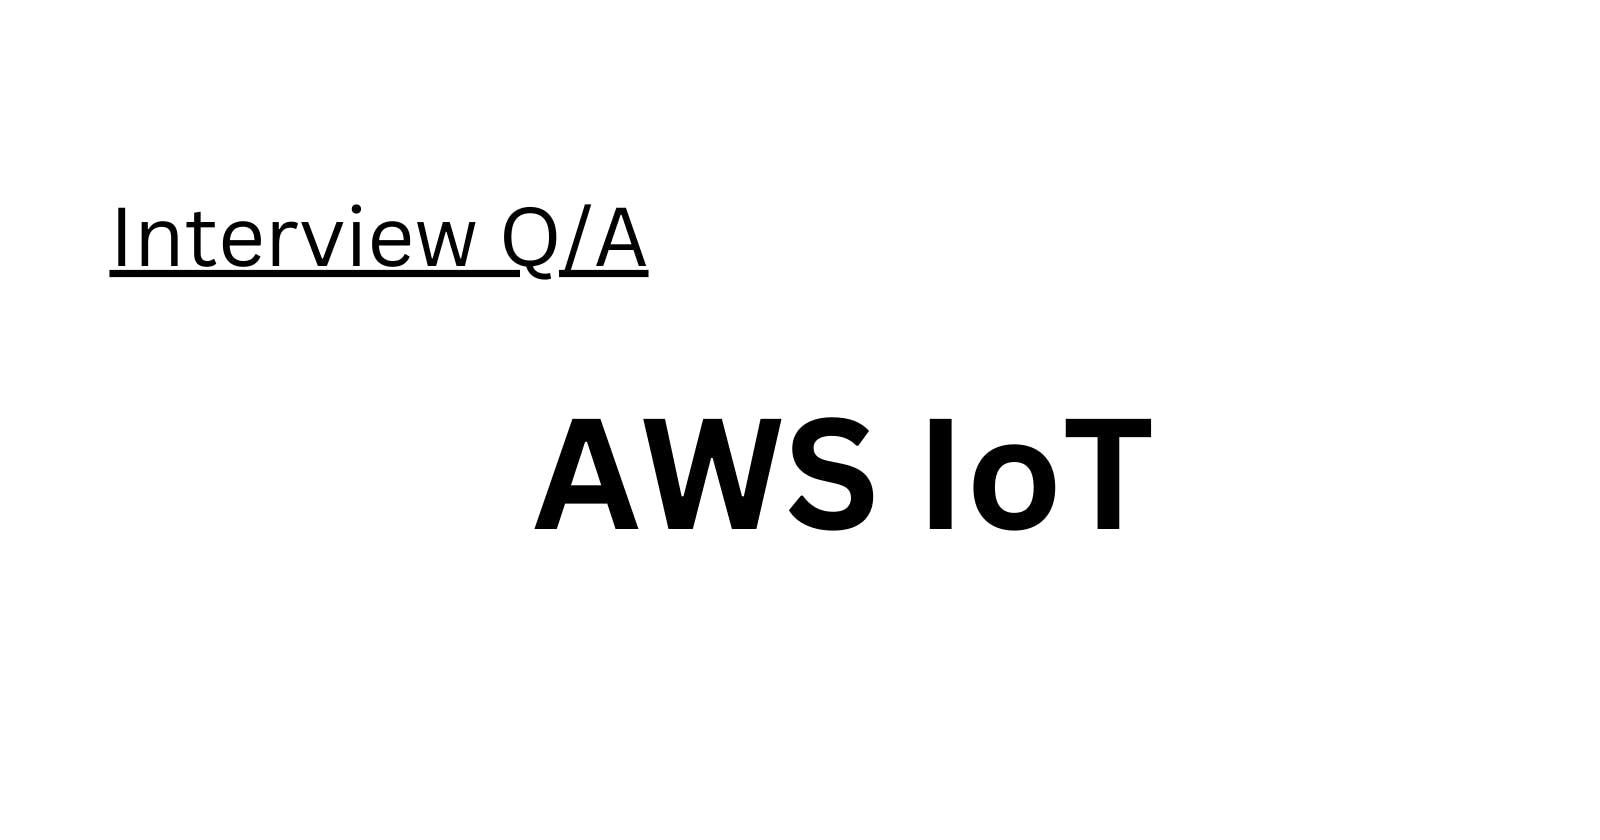 AWS IoT Interview Q/A